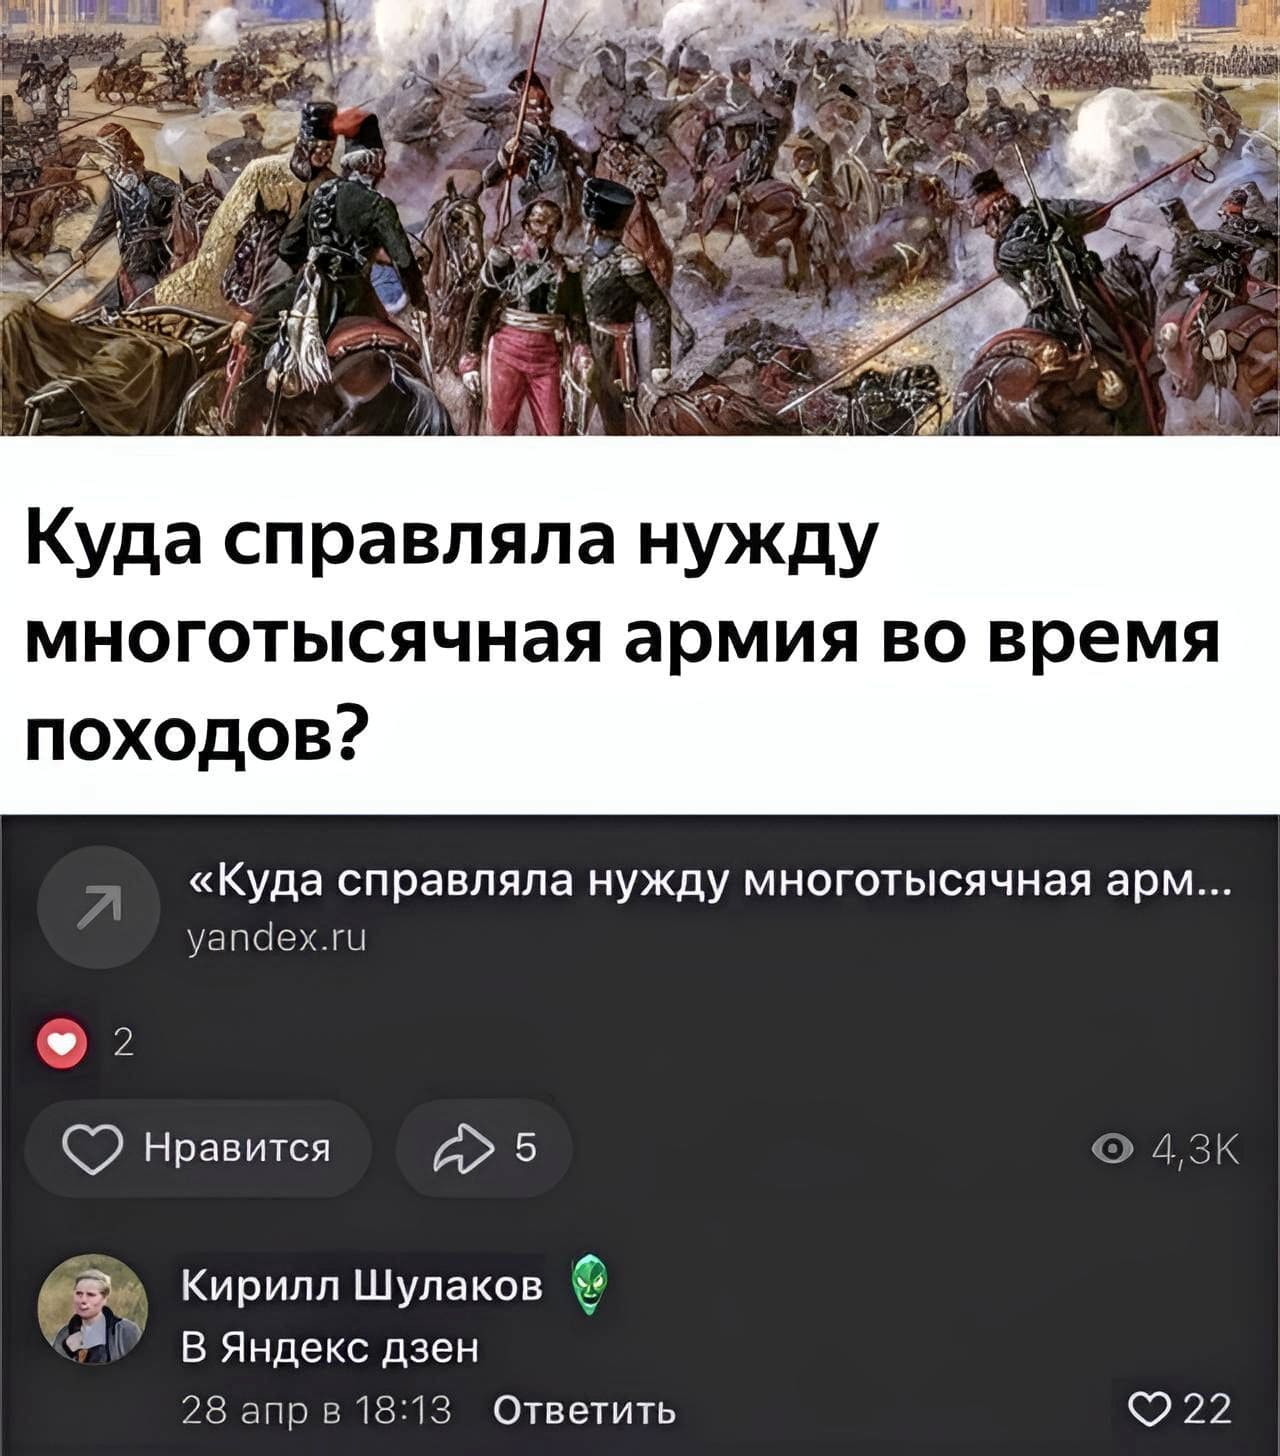 – Куда справляла нужду многотысячная армия во время походов?
– В Яндекс дзен.